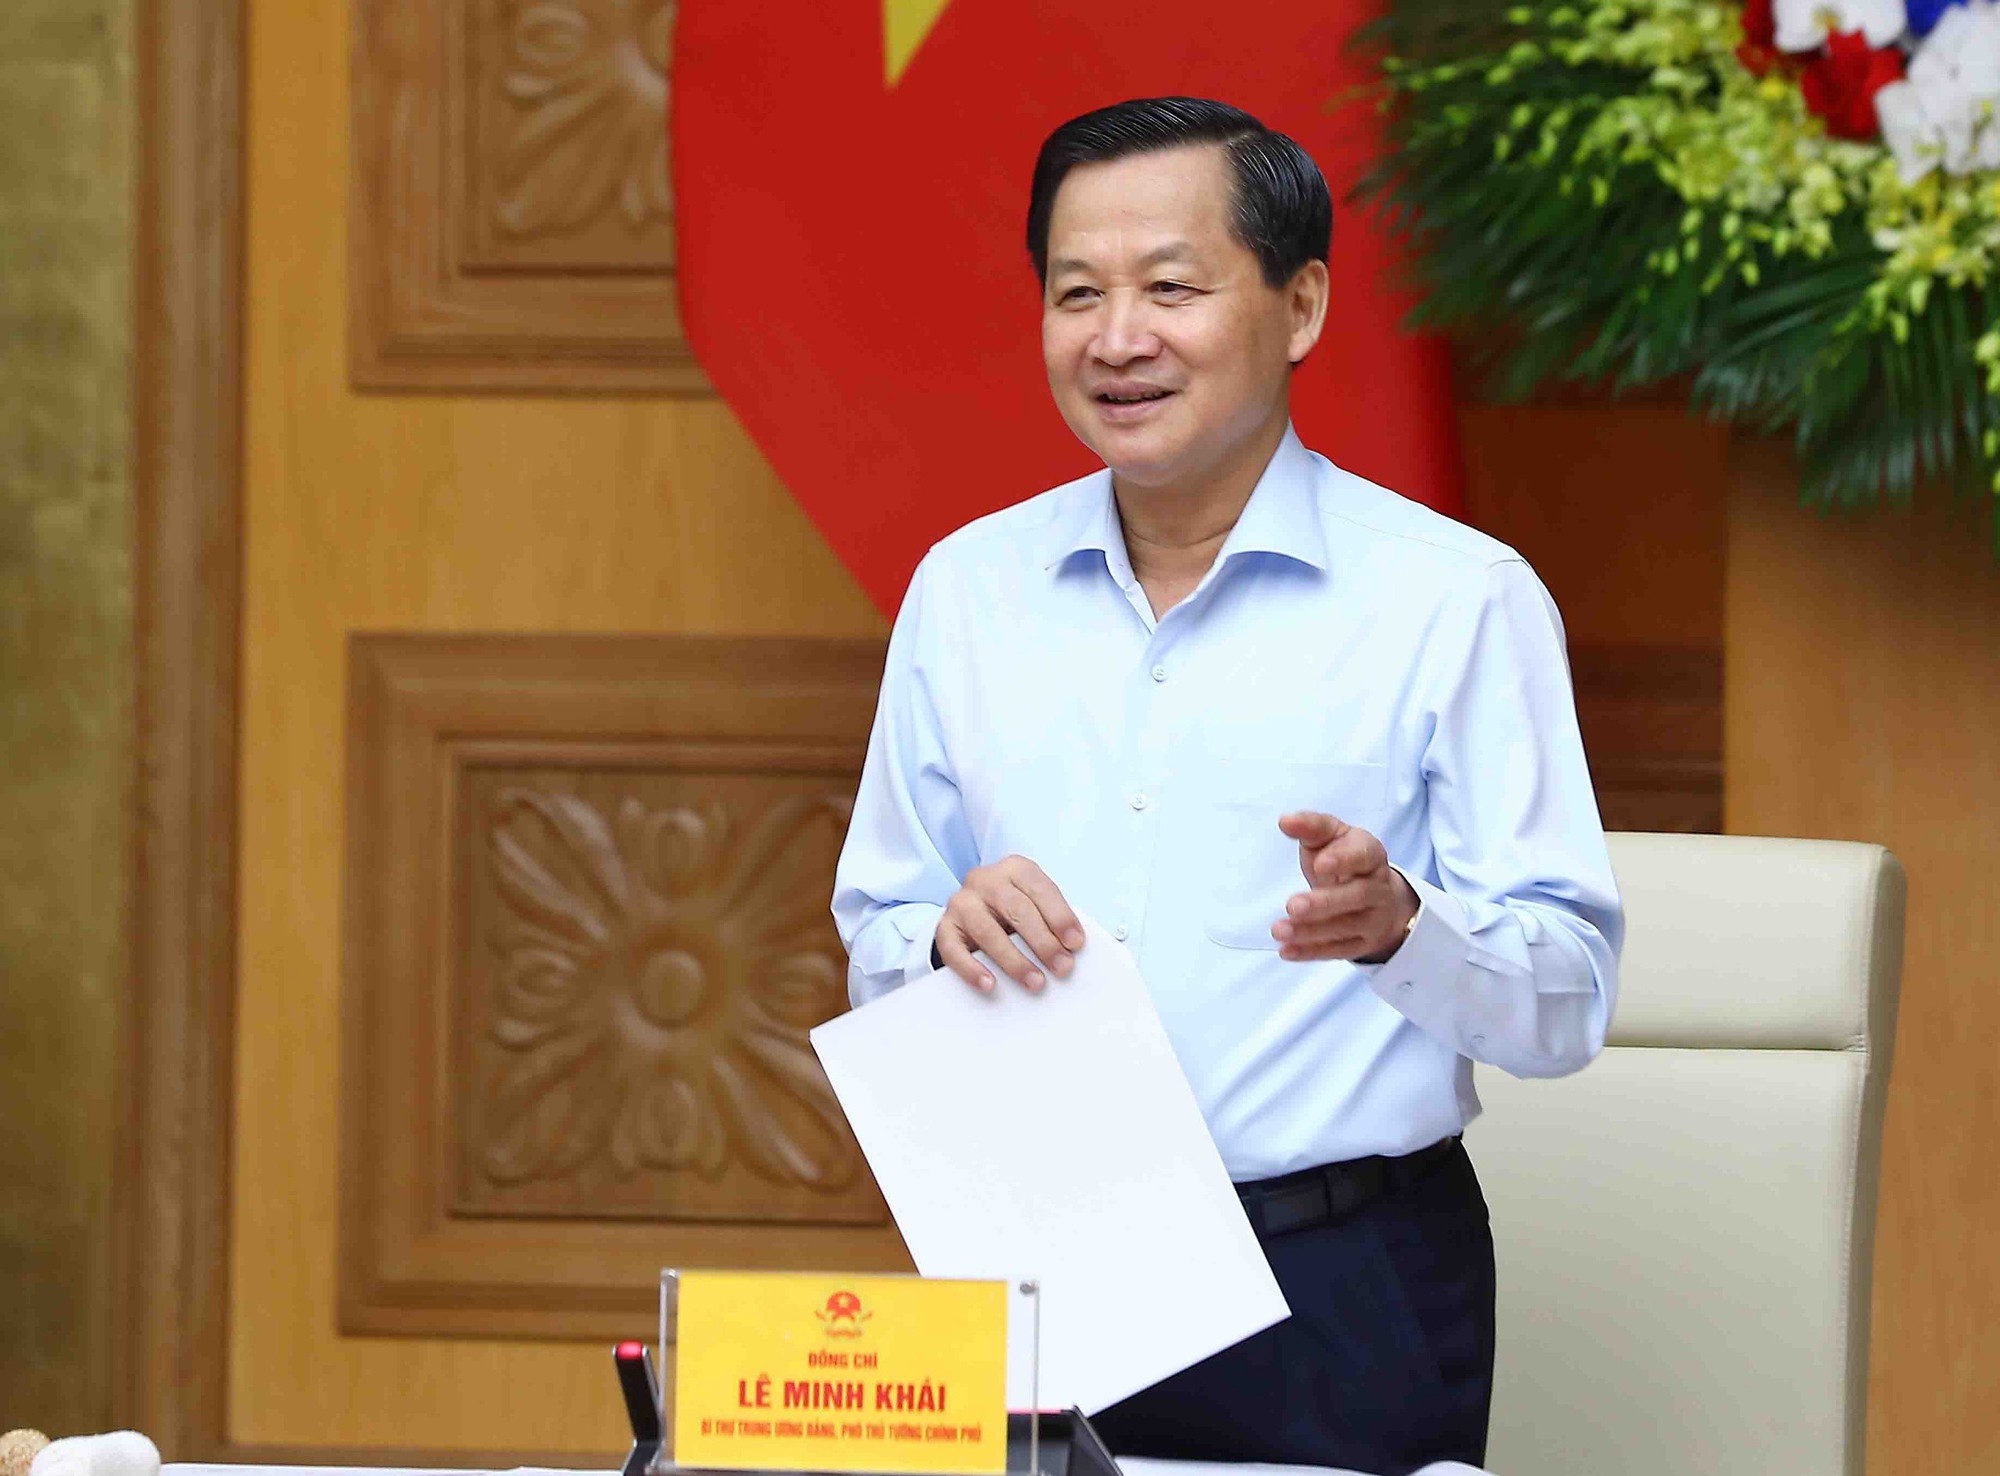 Phó Thủ tướng Lê Minh Khái yêu cầu hoàn thiện phương án, đảm bảo khả thi, đúng pháp luật để xử lý dứt điểm dự án DQS. Ảnh: VGP